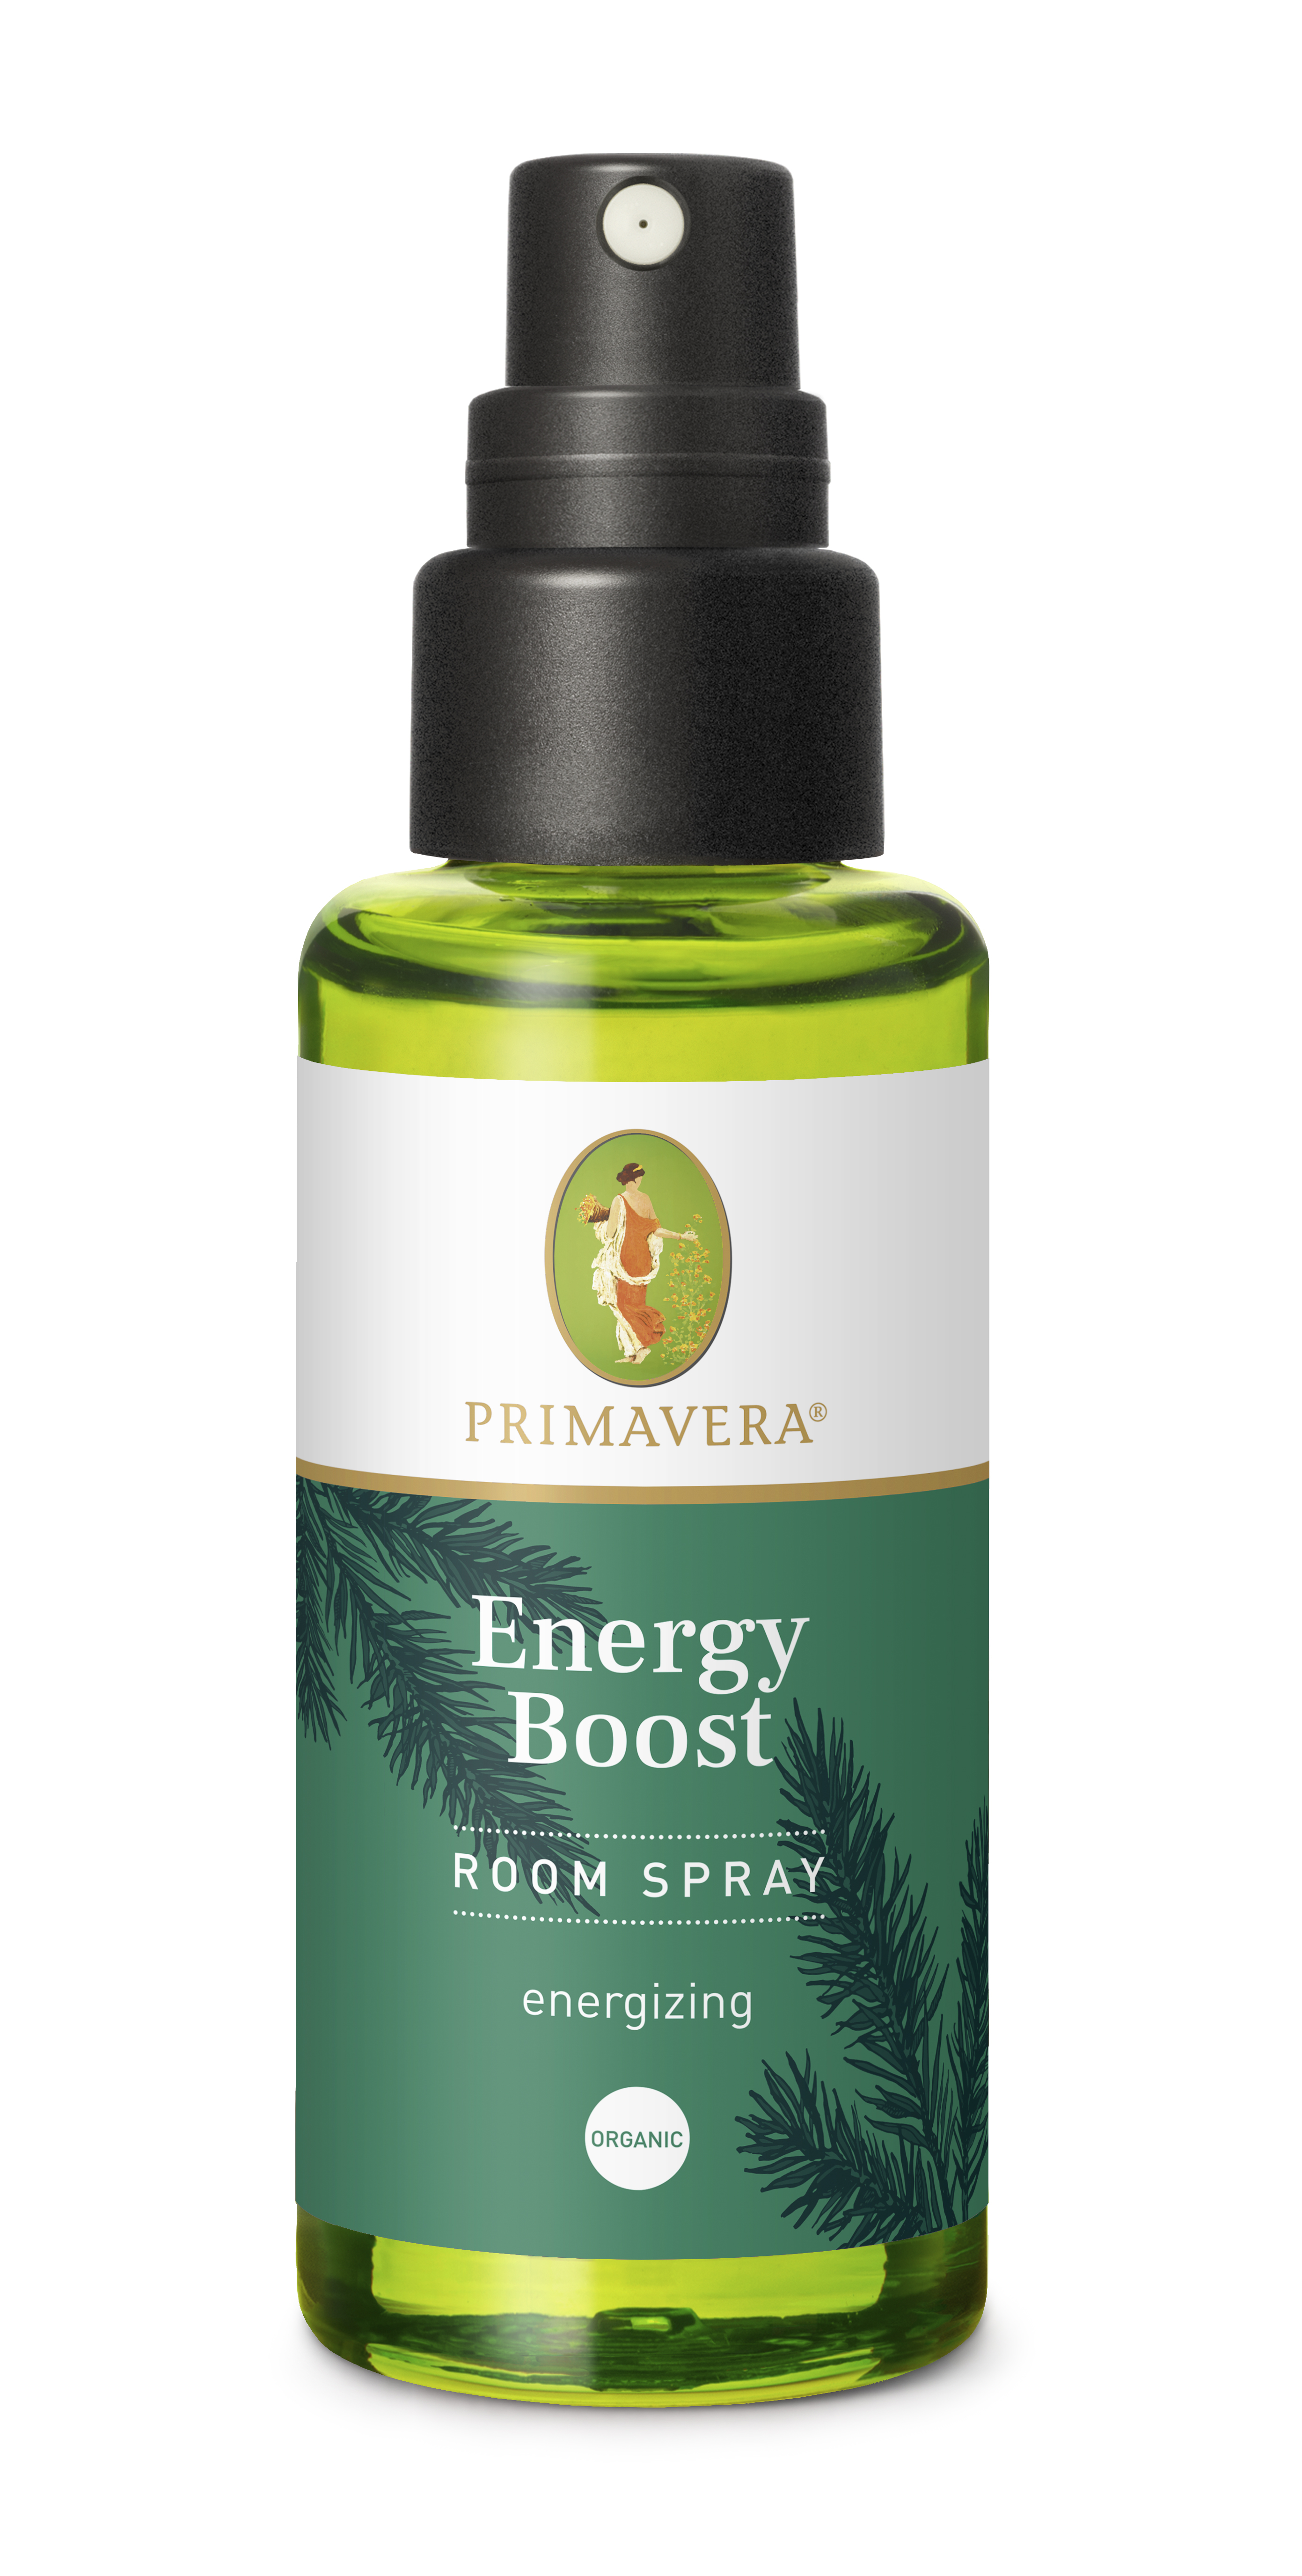 ENERGY BOOST Room Spray, økologisk aromaterapi